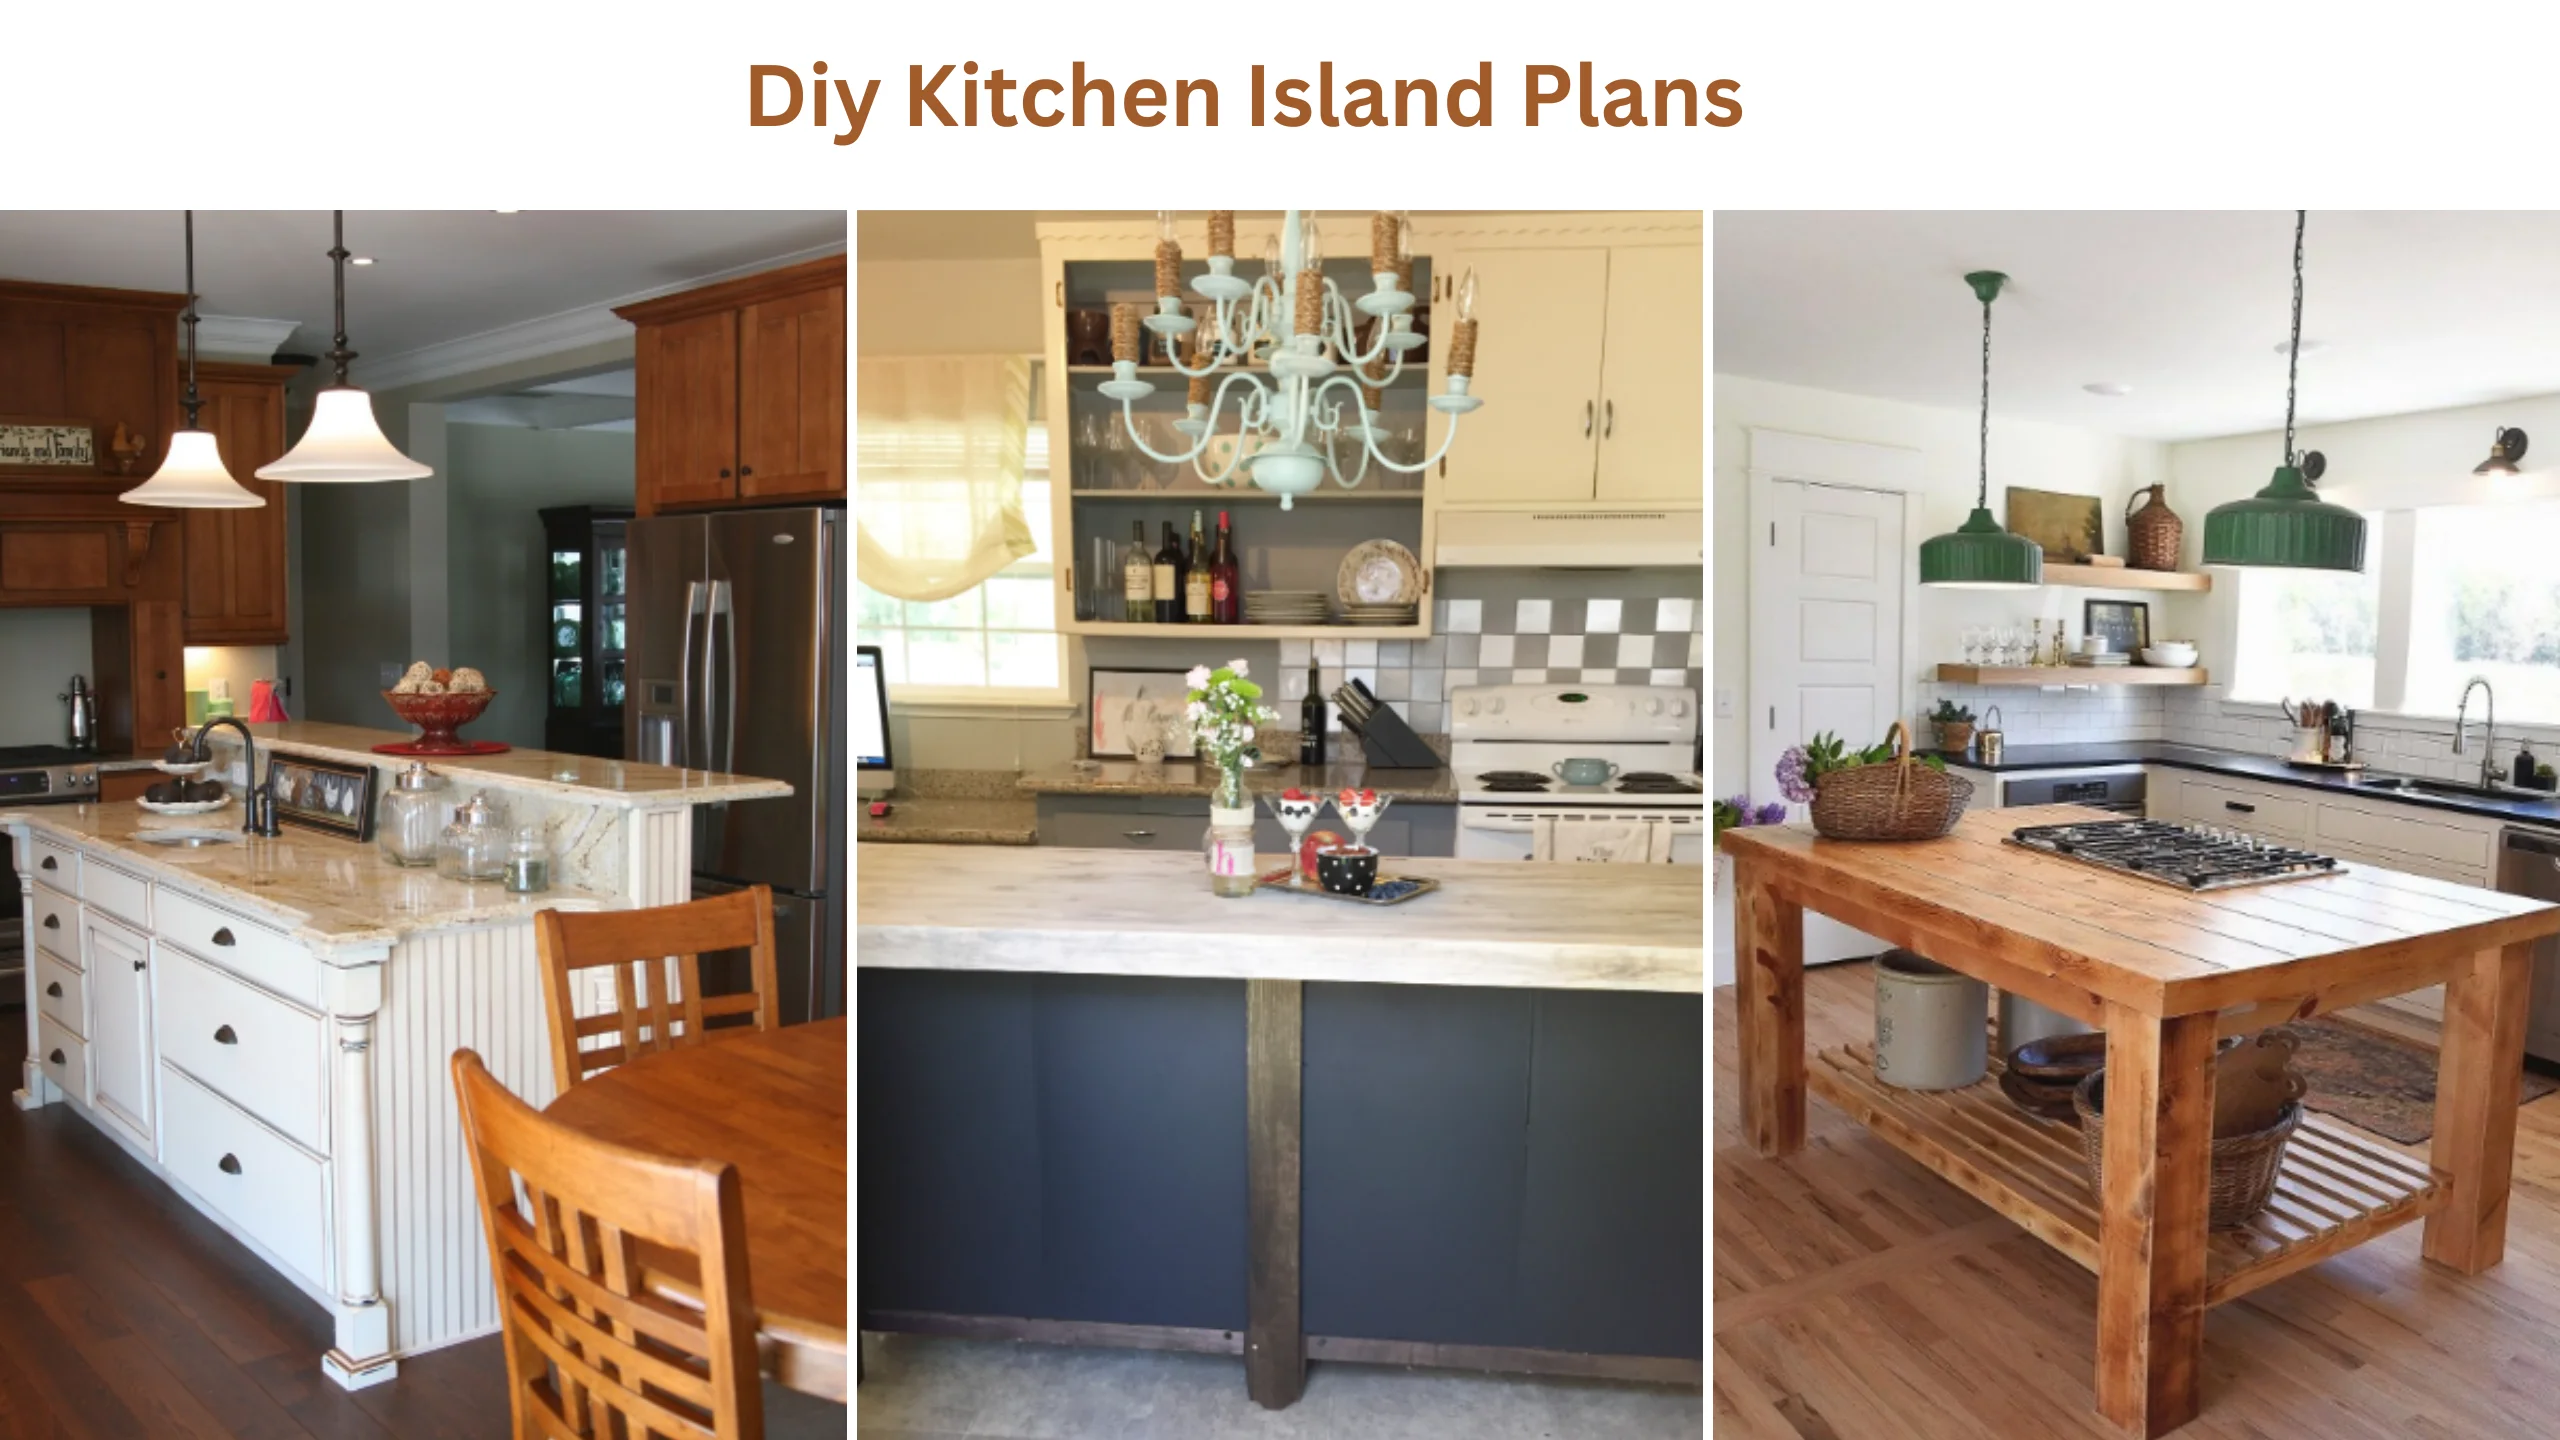 Diy kitchen island plans